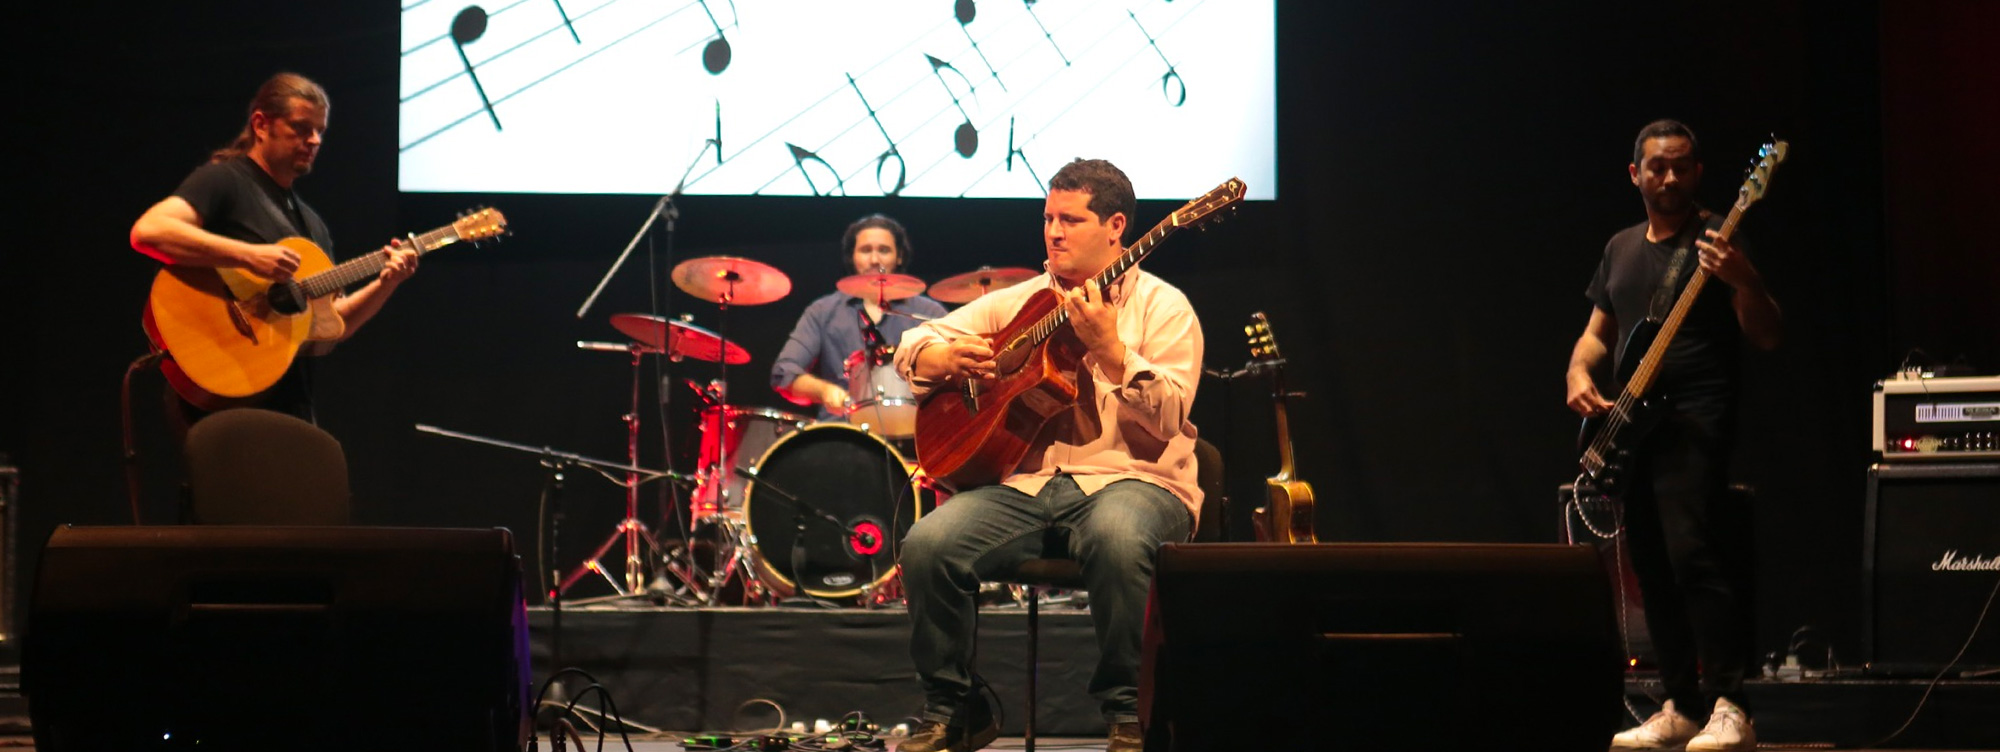 Festival de guitarras de Cartagena